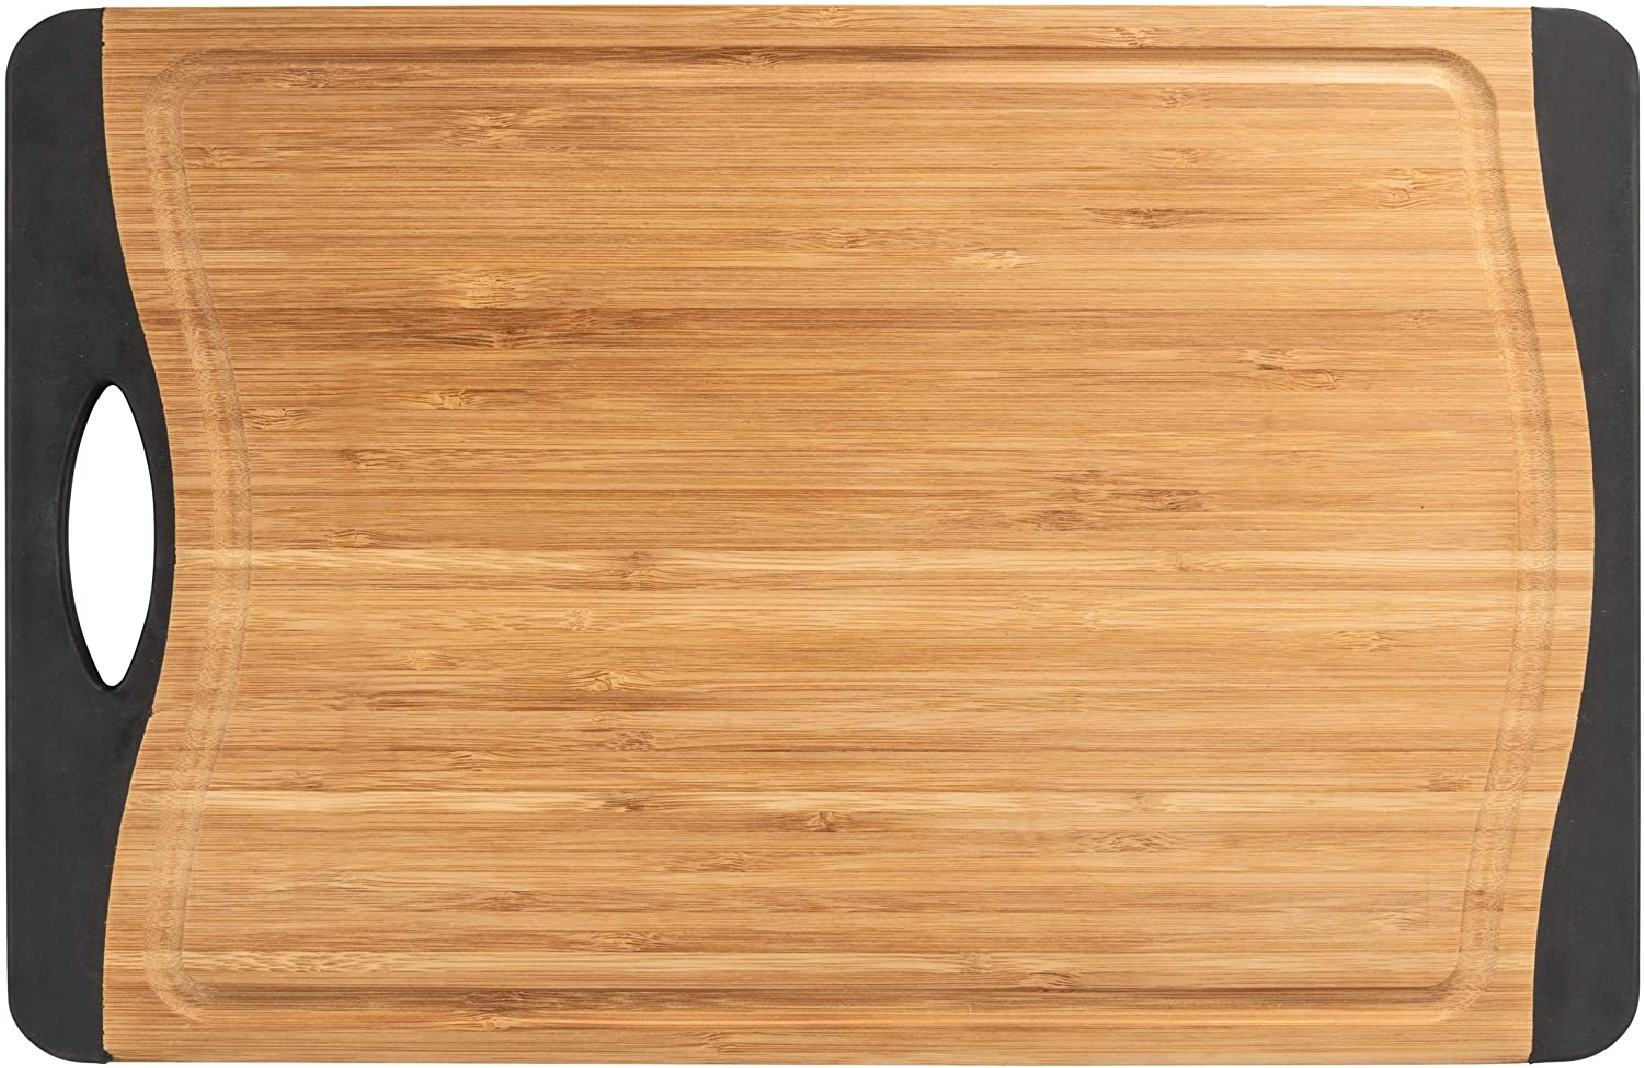 Schneidebrett Bambus Anti-Rutsch M+ - Küchenbrett, Schneidbrett mit Saftrille und Griff, klingenschonend, Bambus, 33 x 1.5 x 23 cm, Braun